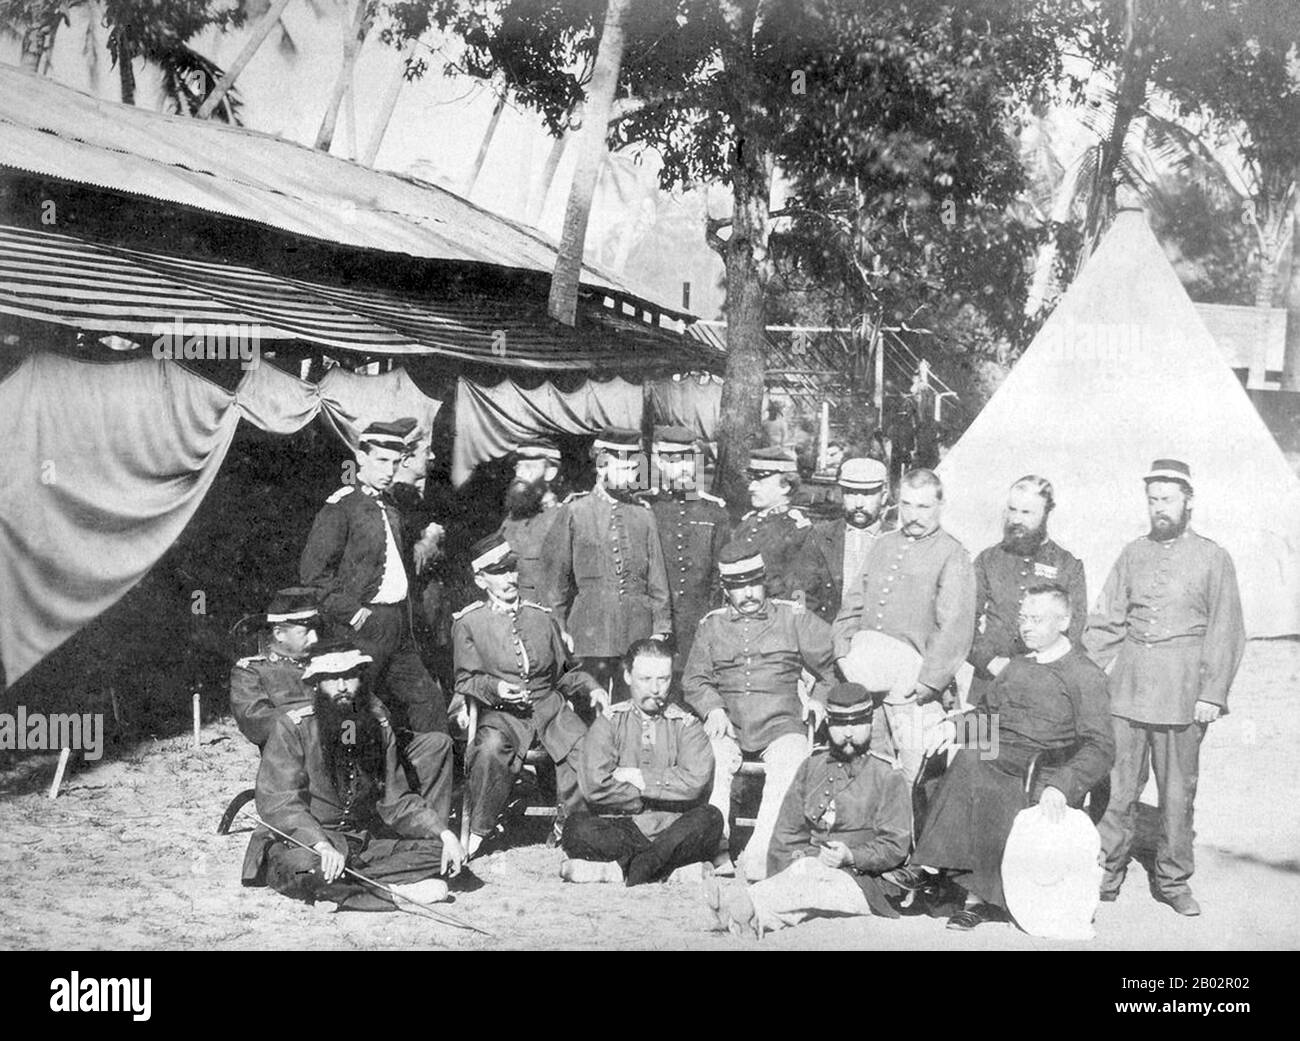 La guerre d'Aceh, également connue sous le nom de guerre néerlandaise ou de guerre Infidale (1873–1914), était un conflit militaire armé entre le Sultanat d'Aceh et les Pays-Bas, déclenché par des discussions entre les représentants d'Aceh et du Royaume-Uni à Singapour au début de 1873. La guerre faisait partie d'une série de conflits à la fin du XIXe siècle qui ont consolidé la domination néerlandaise sur l'Indonésie moderne. Banque D'Images